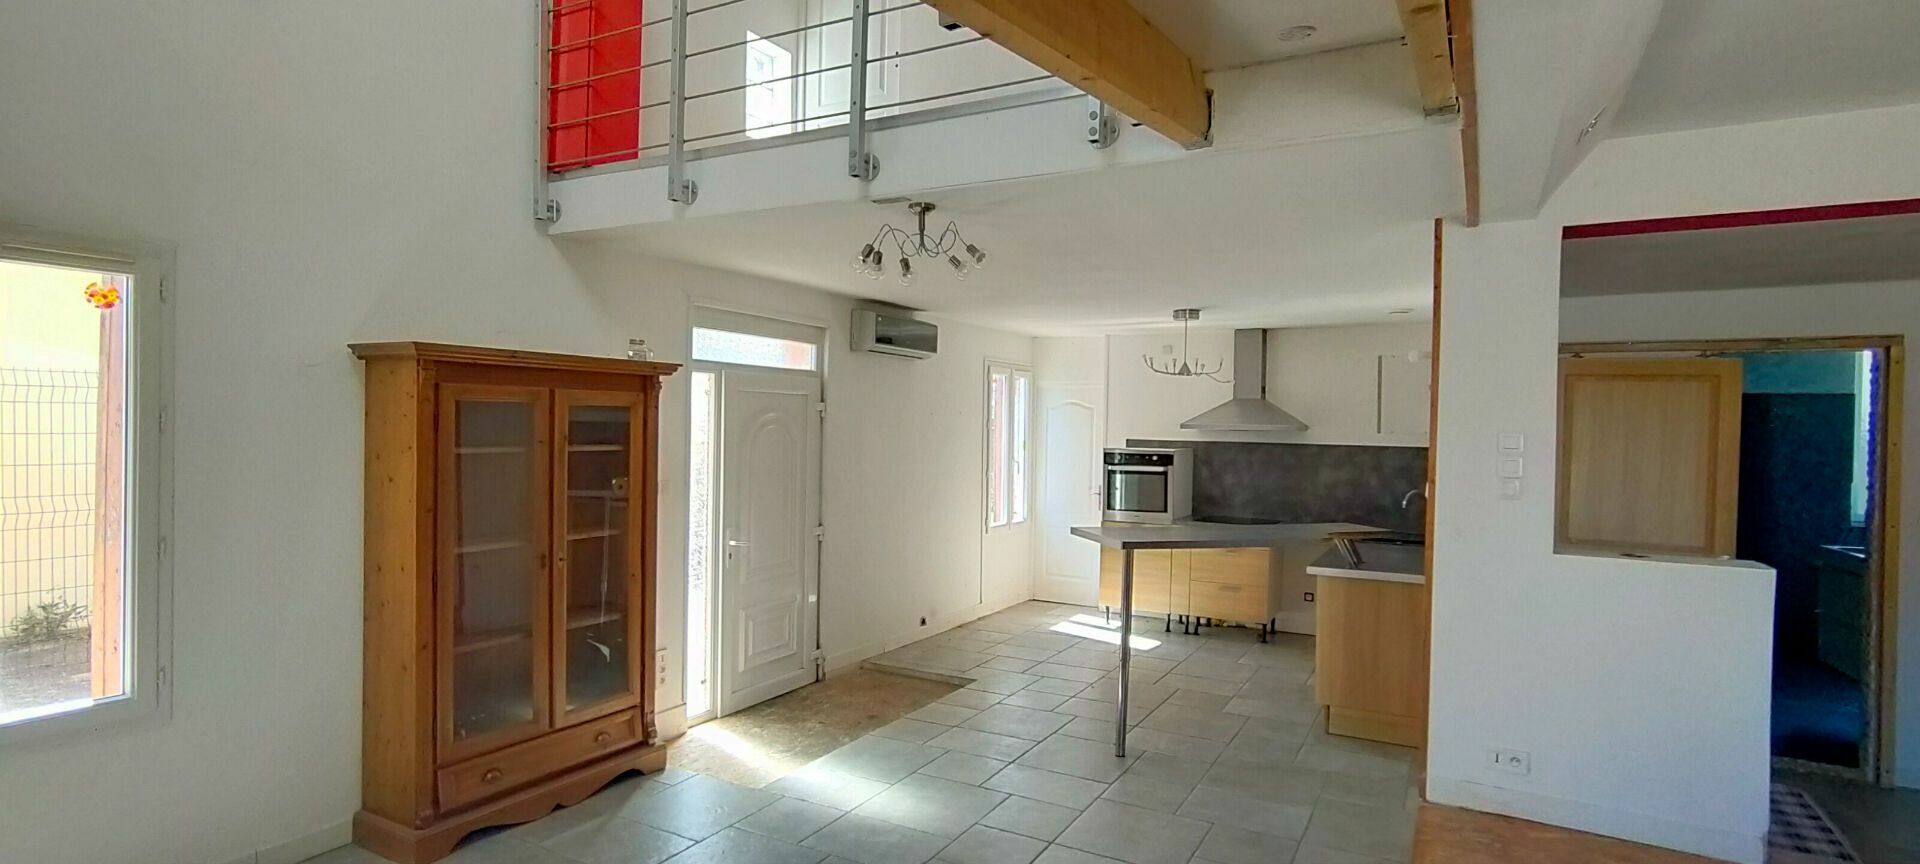 Maison à vendre 5 120m2 à Montpezat-de-Quercy vignette-1